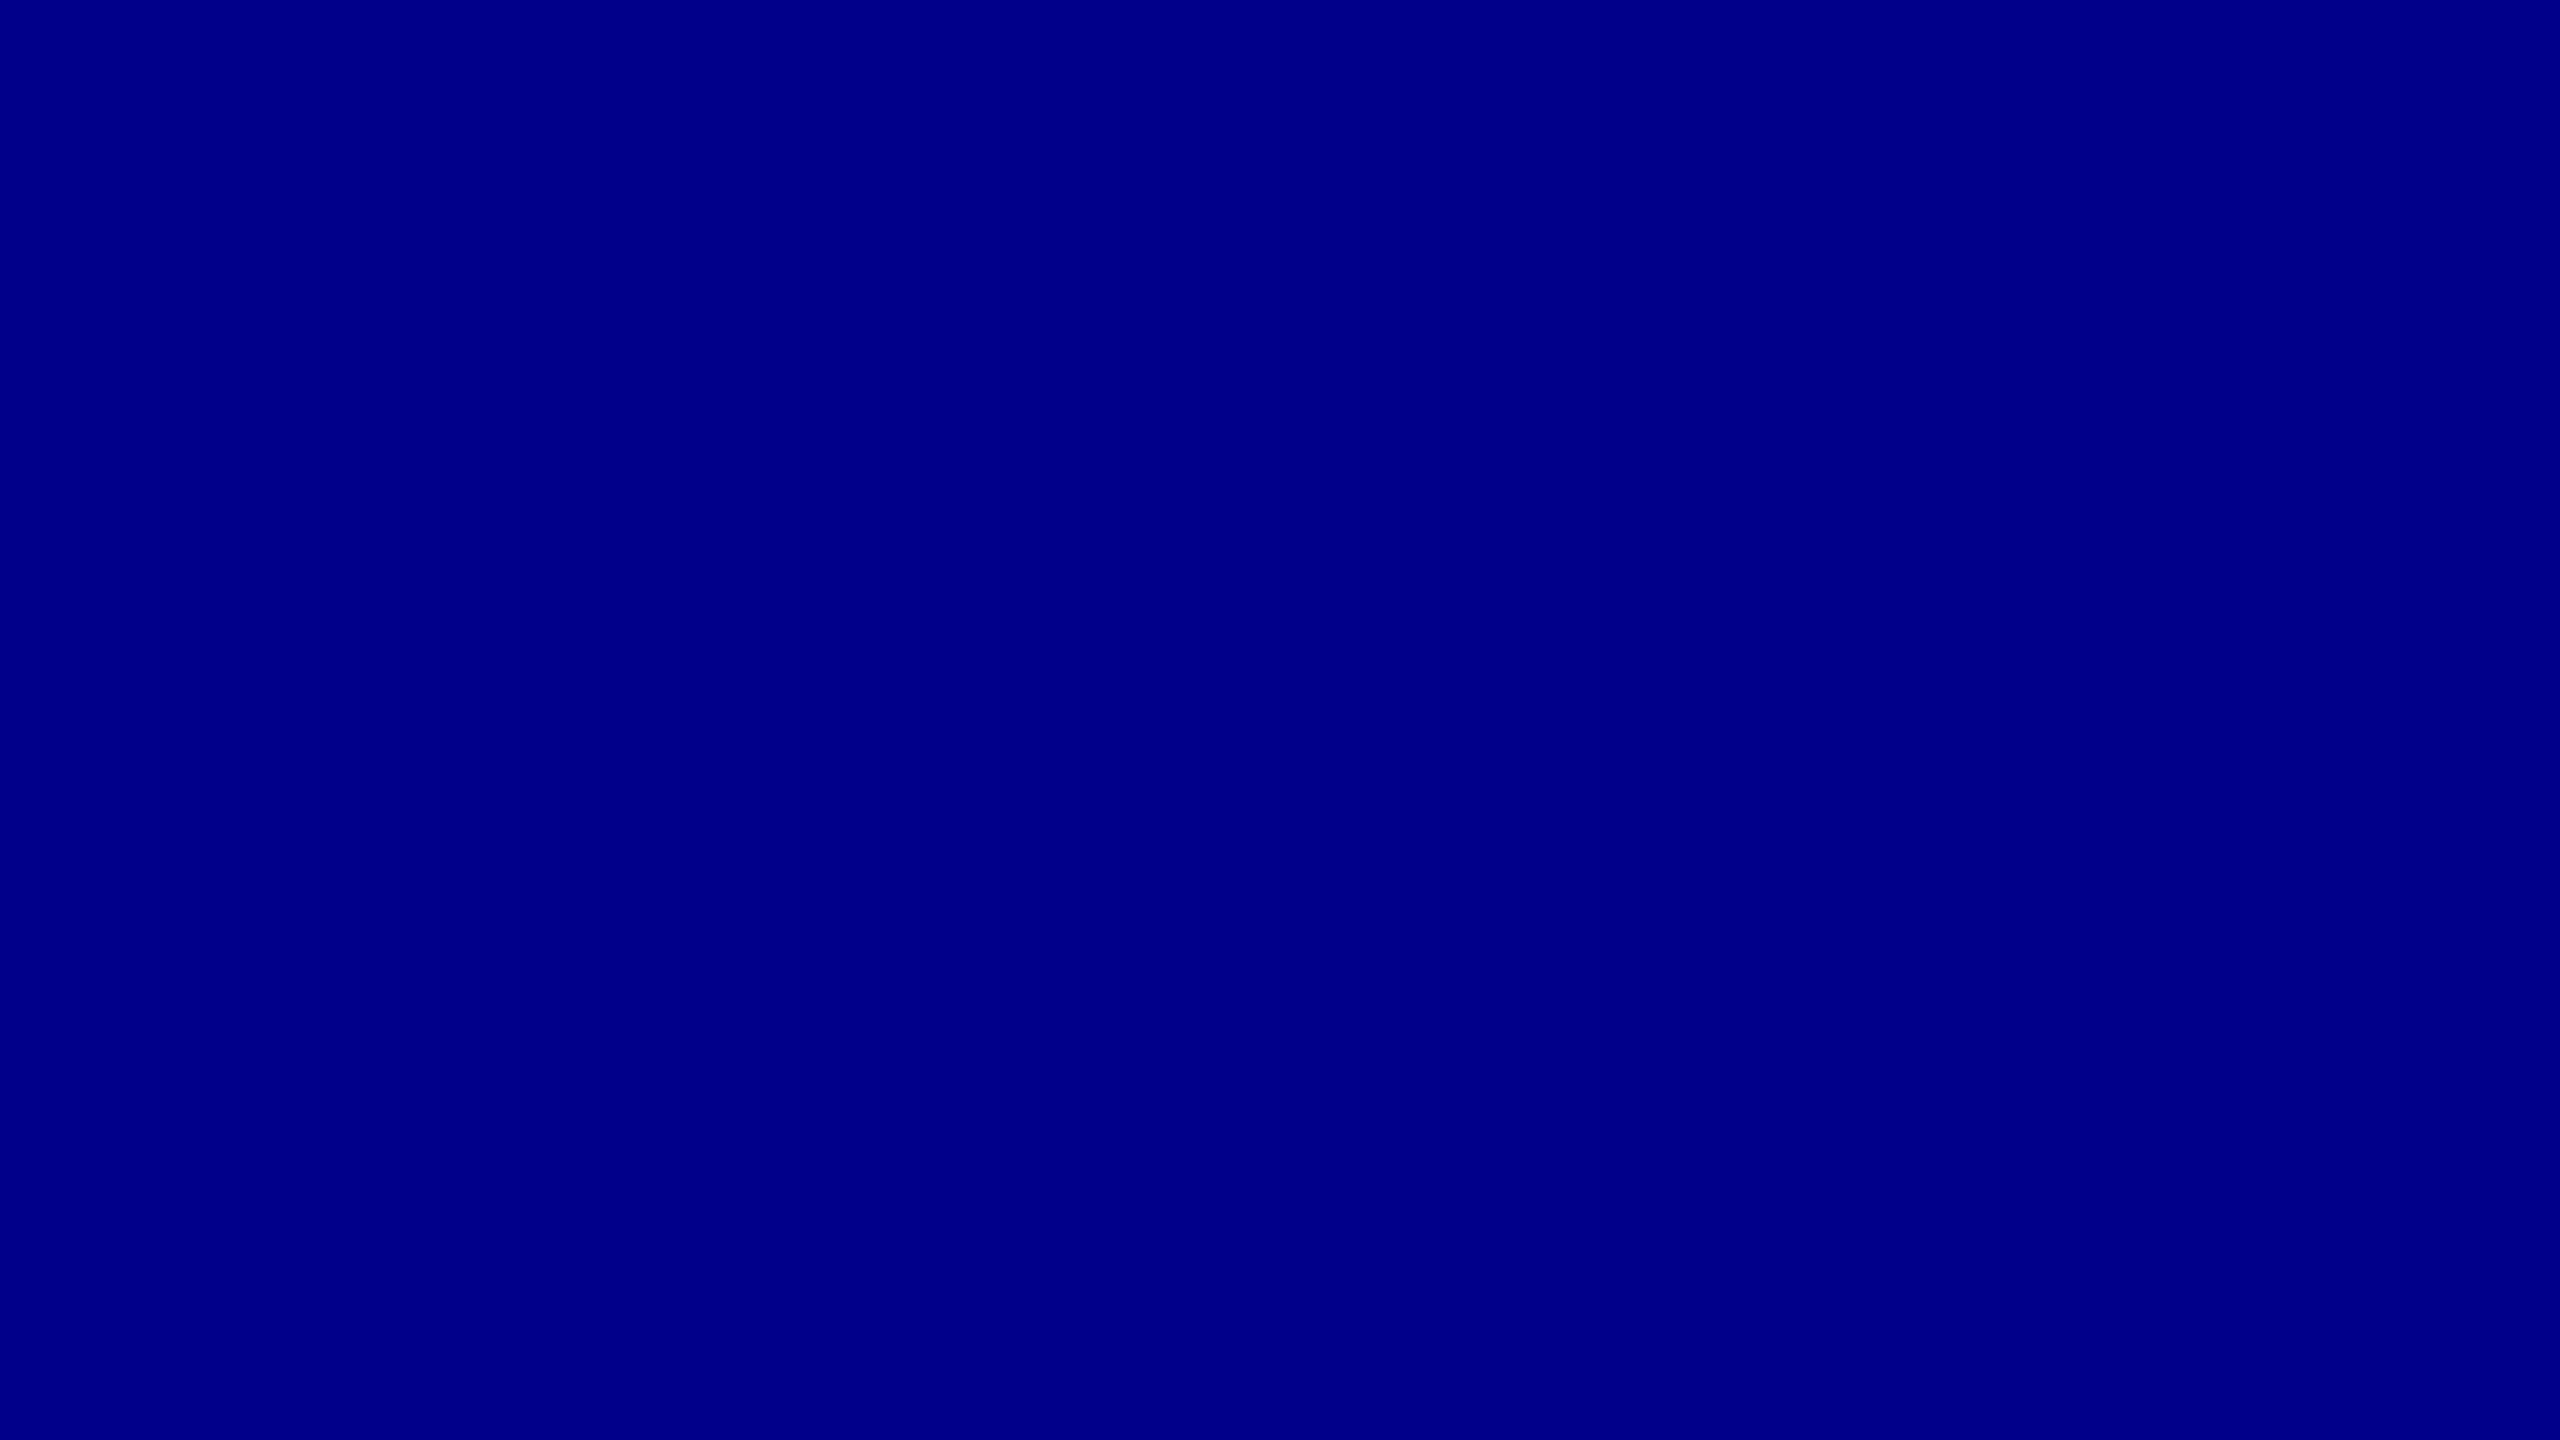 Image Dark Blue Solid Color Background Jpg